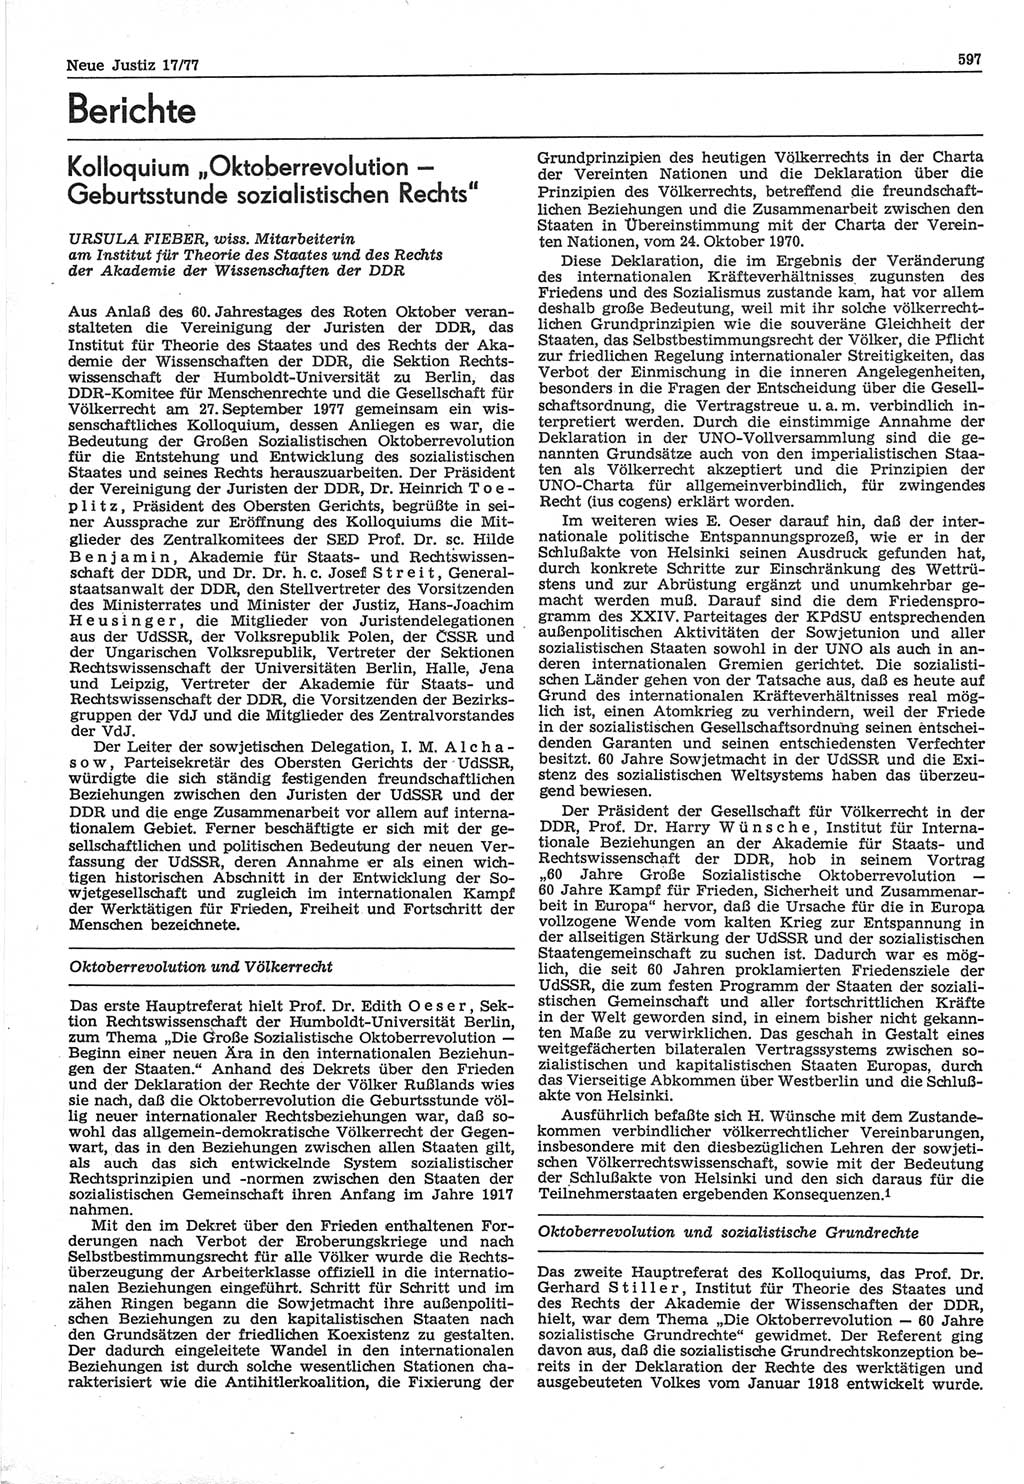 Neue Justiz (NJ), Zeitschrift für Recht und Rechtswissenschaft-Zeitschrift, sozialistisches Recht und Gesetzlichkeit, 31. Jahrgang 1977, Seite 597 (NJ DDR 1977, S. 597)